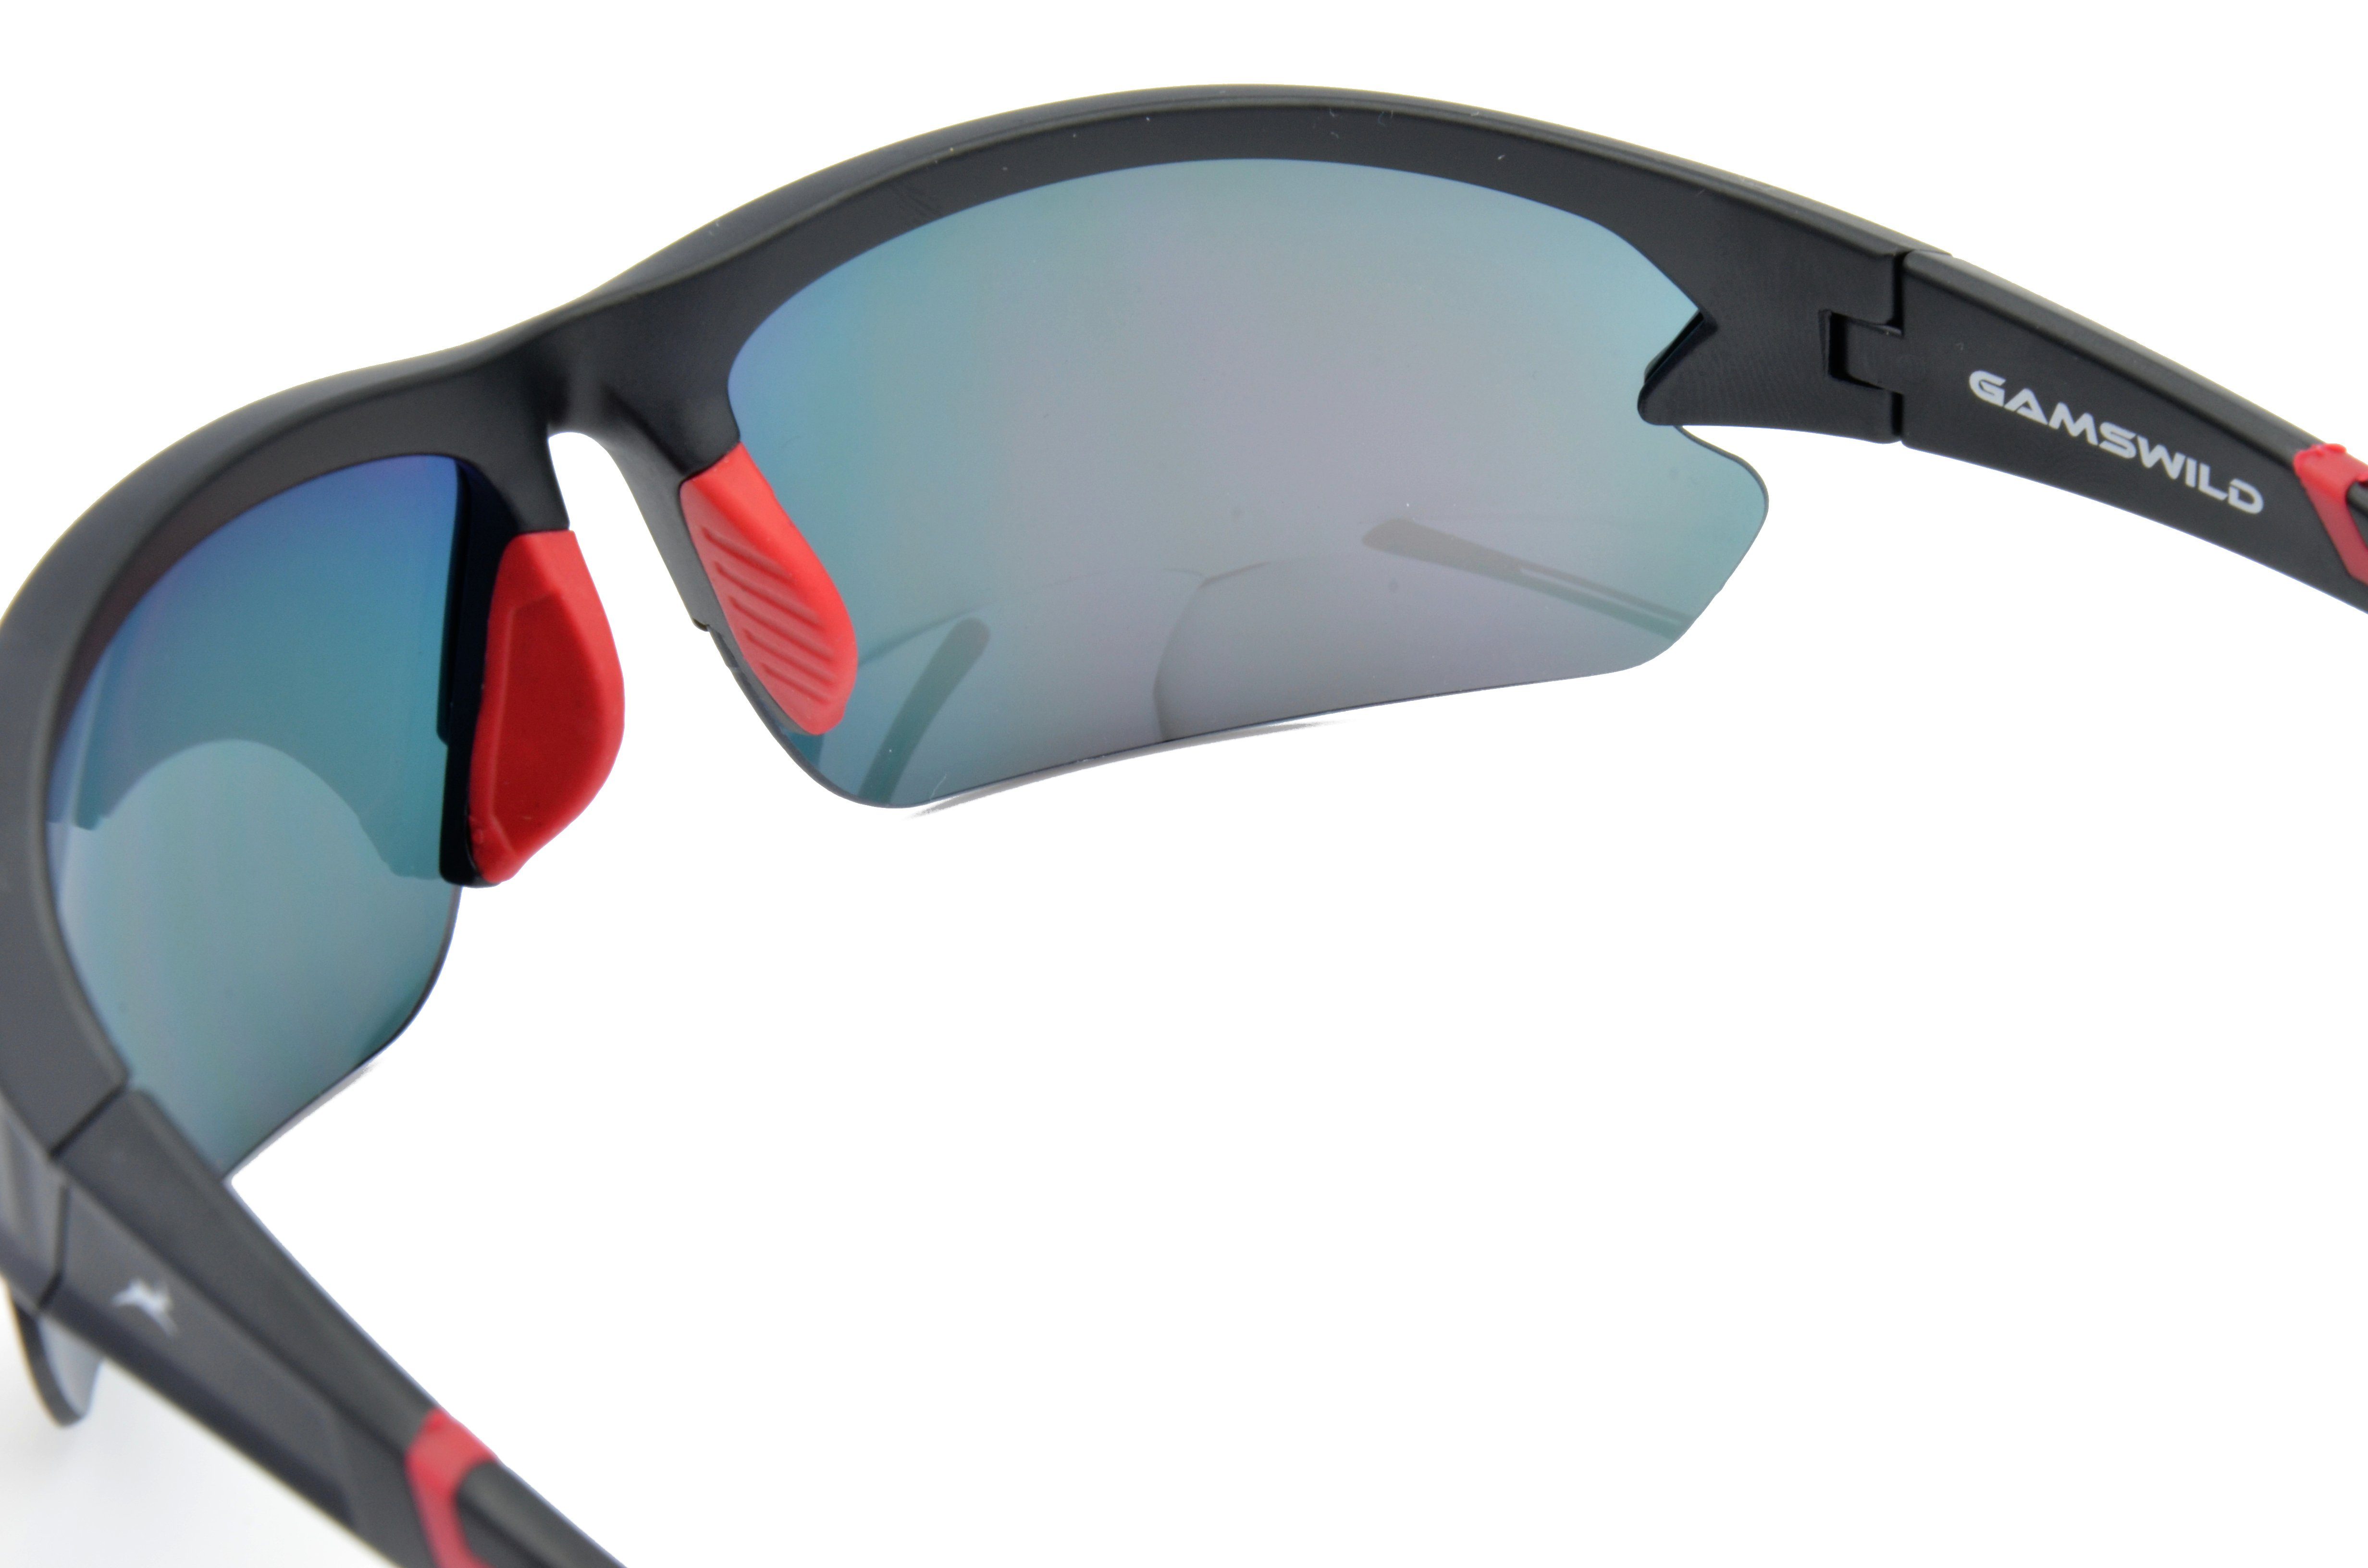 Gamswild Sportbrille Skibrille Unisex, Herren Damen violett, rot-orange, Fahrradbrille WS6028 blau, Sonnenbrille Halbrahmenbrille